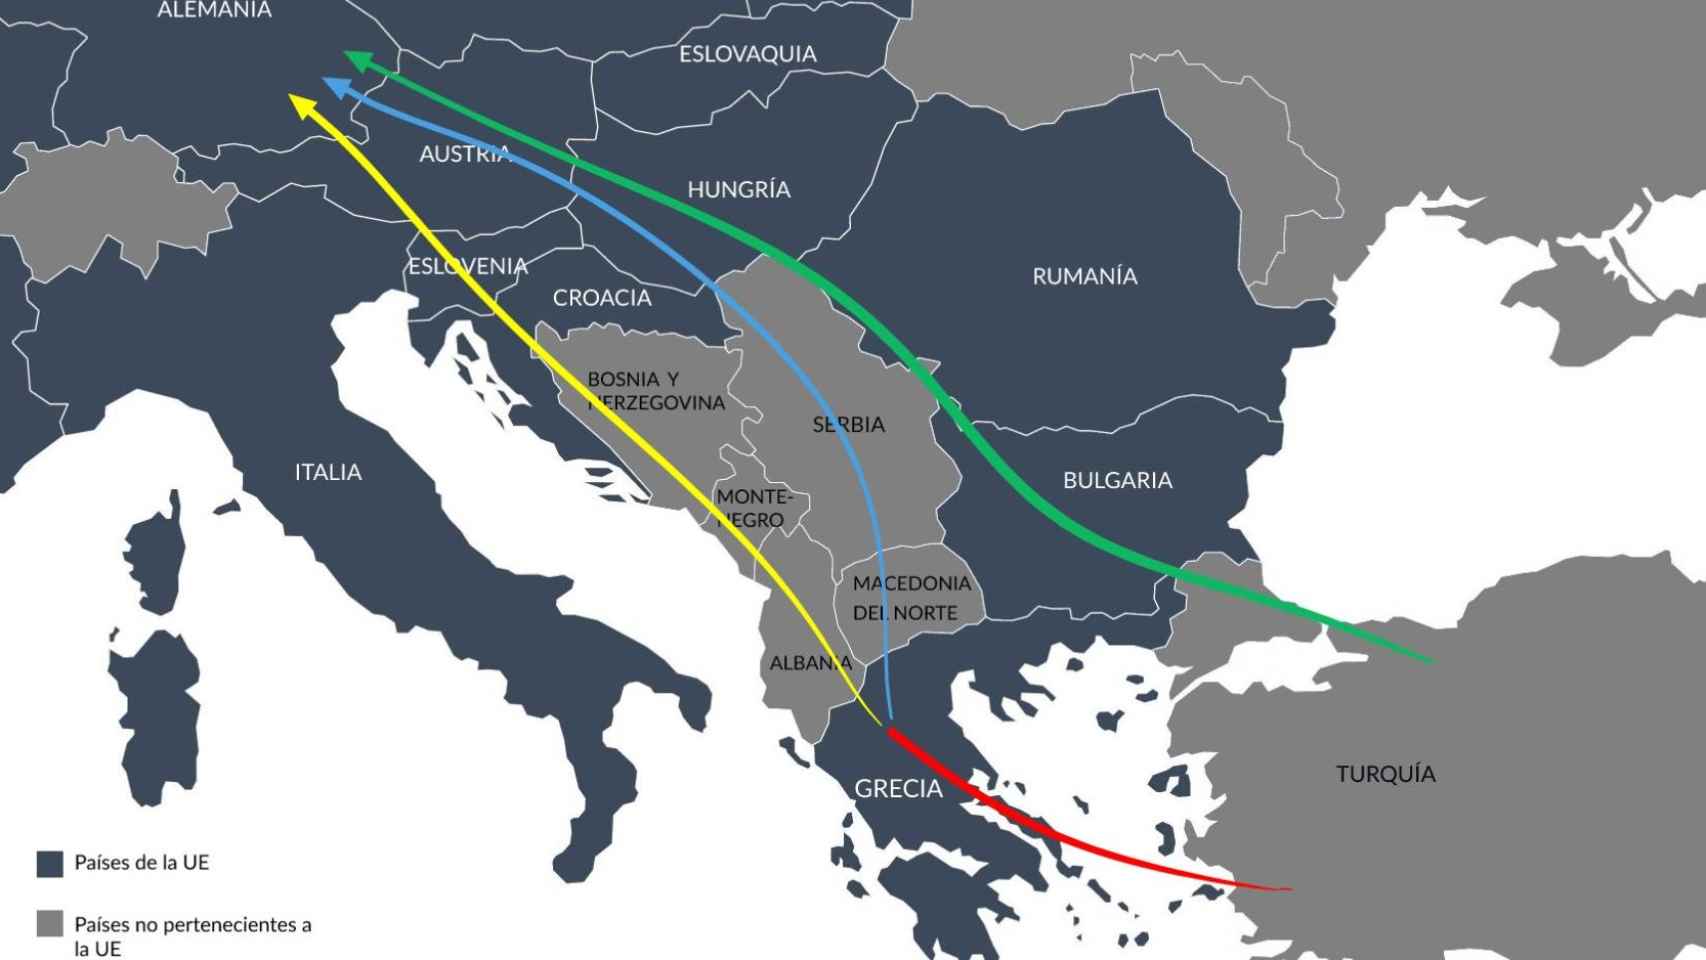 Principales recorridos de la Ruta de los Balcanes que siguen los refugiados para llegar a la UE.